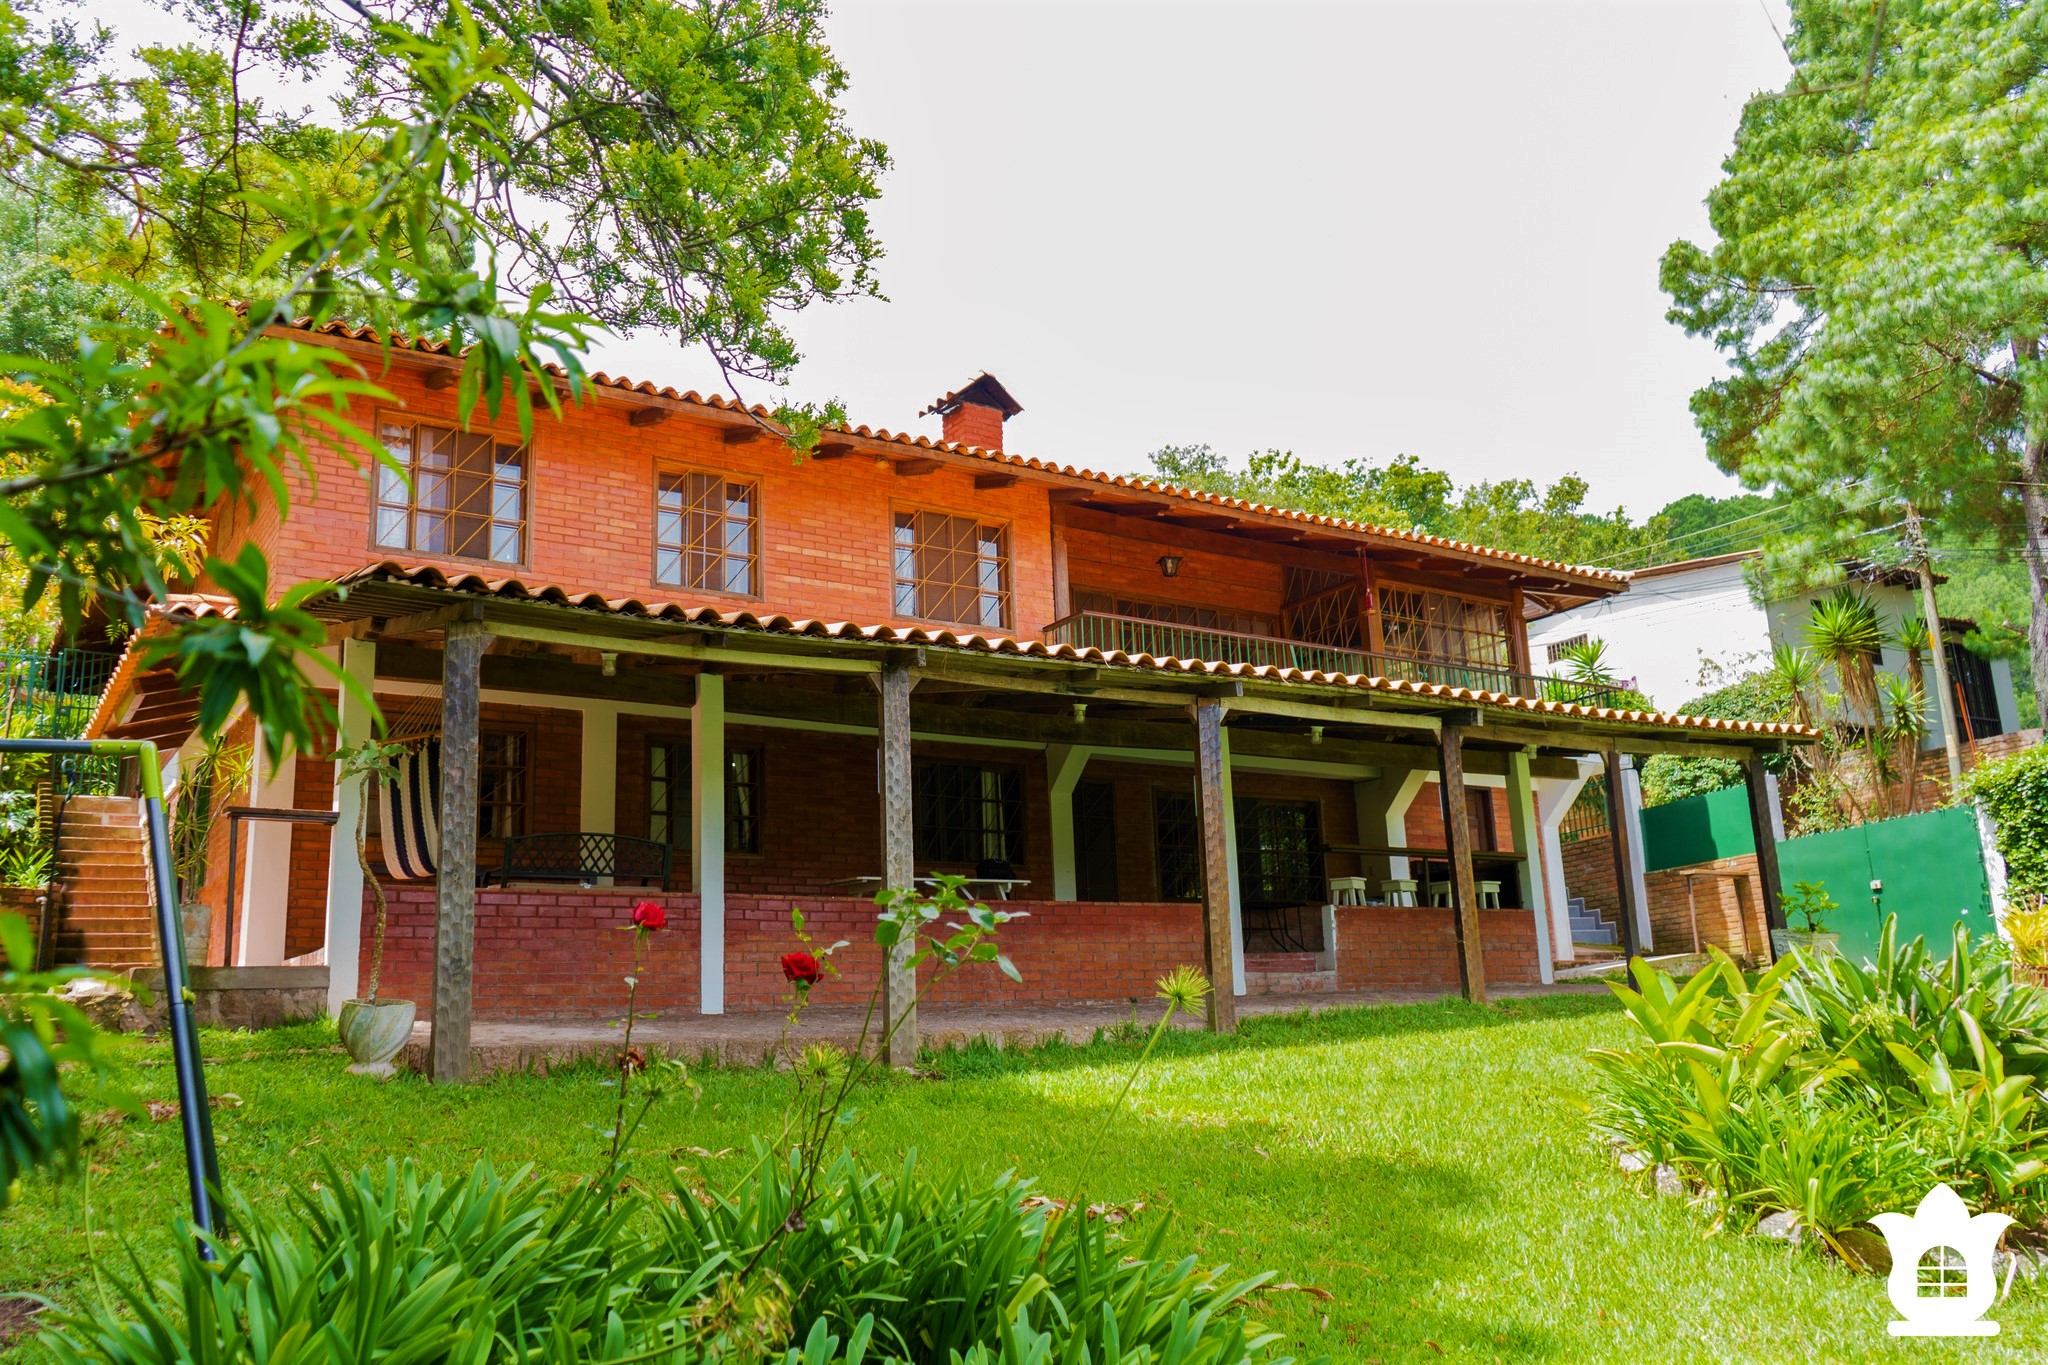 Villa Floresta, alojamiento colonial rodeado de jardines en Santa Lucia